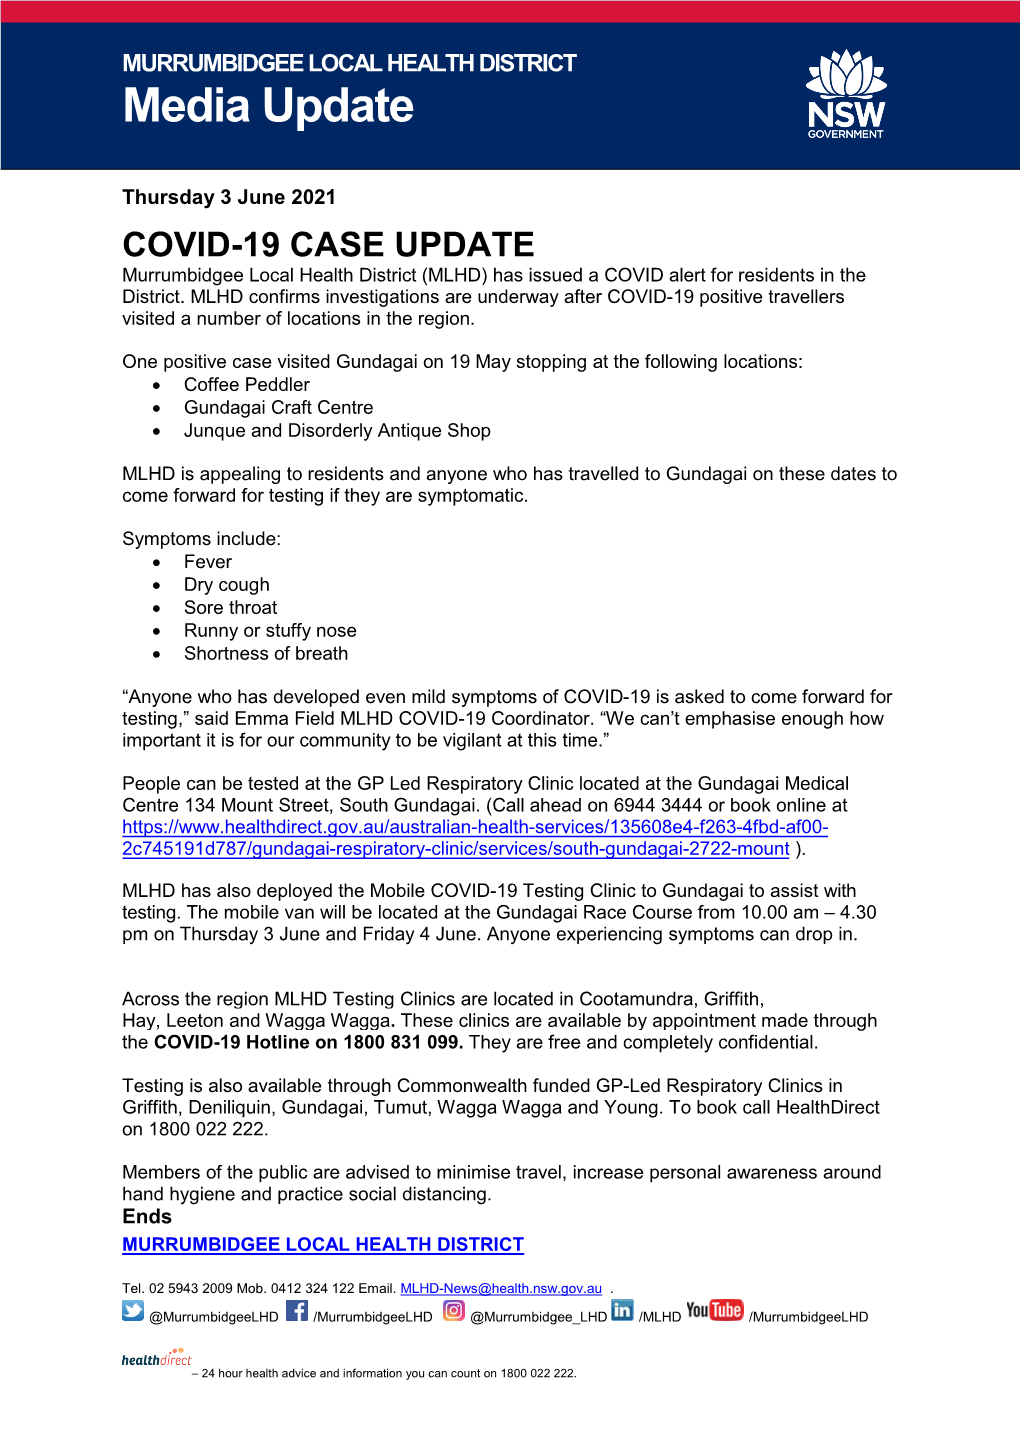 COVID-19 Case Update 3 June 2021